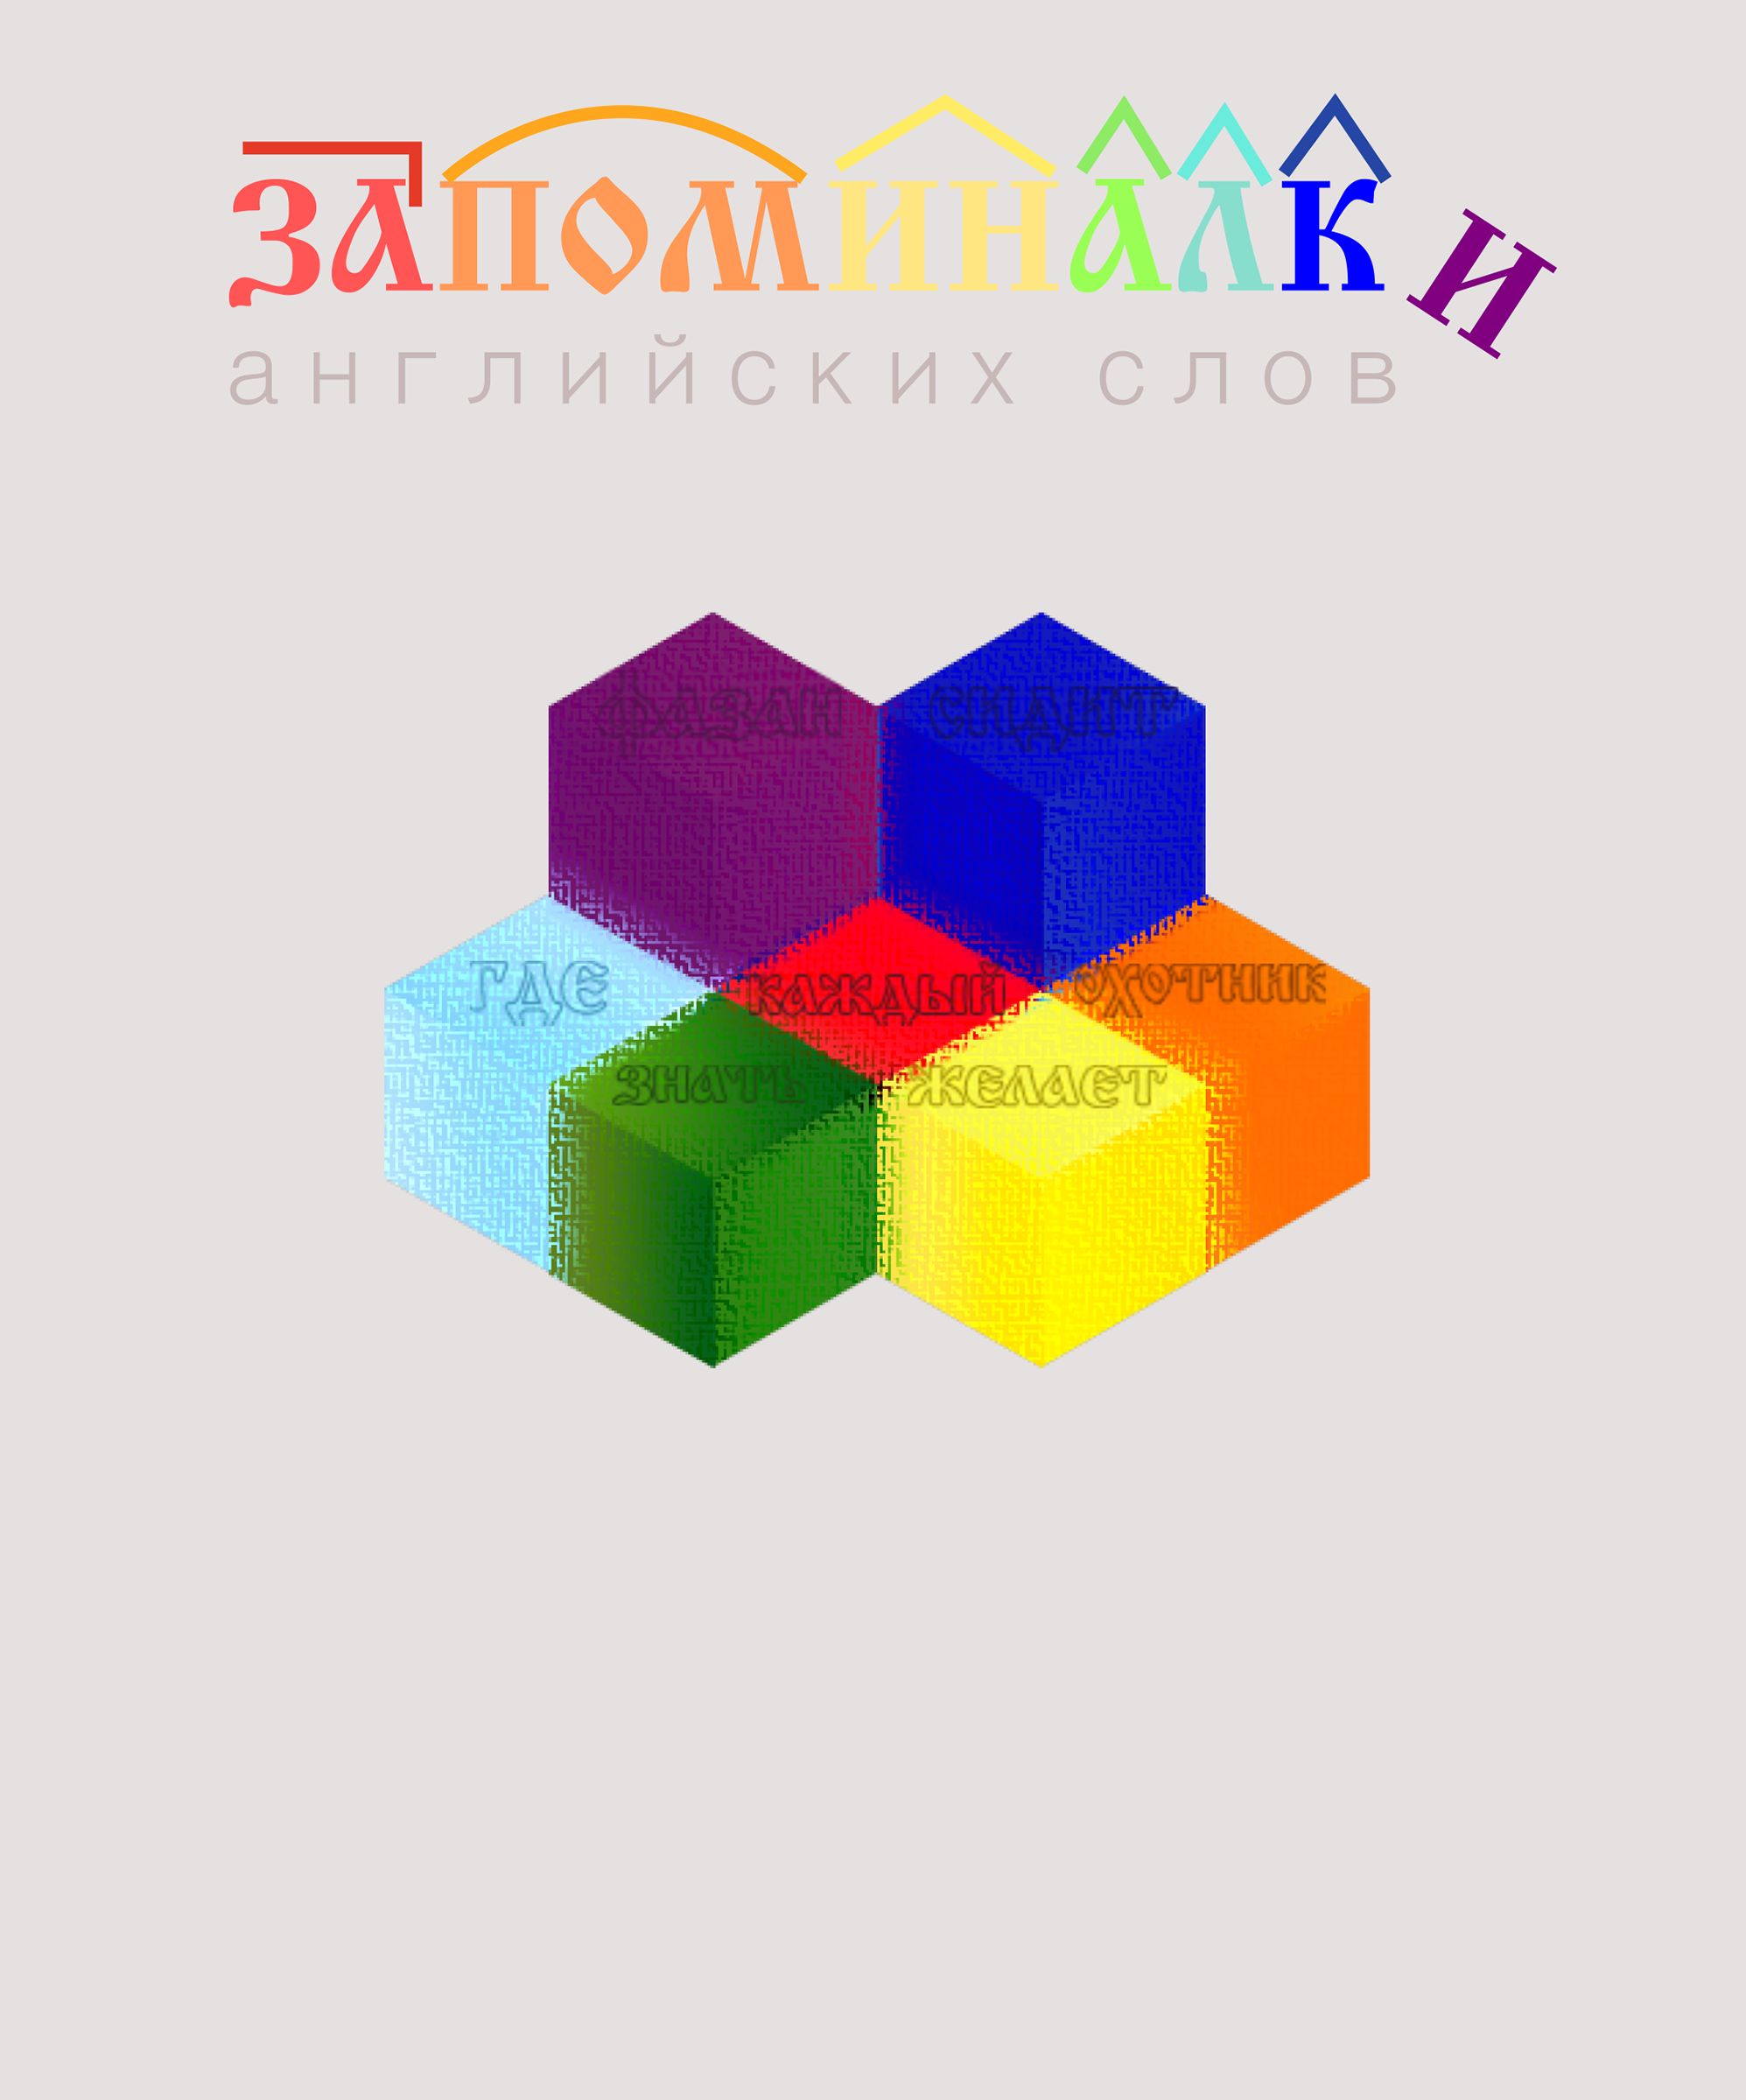 Обложка для электронной книги с запоминалками - дизайнер YULBAN